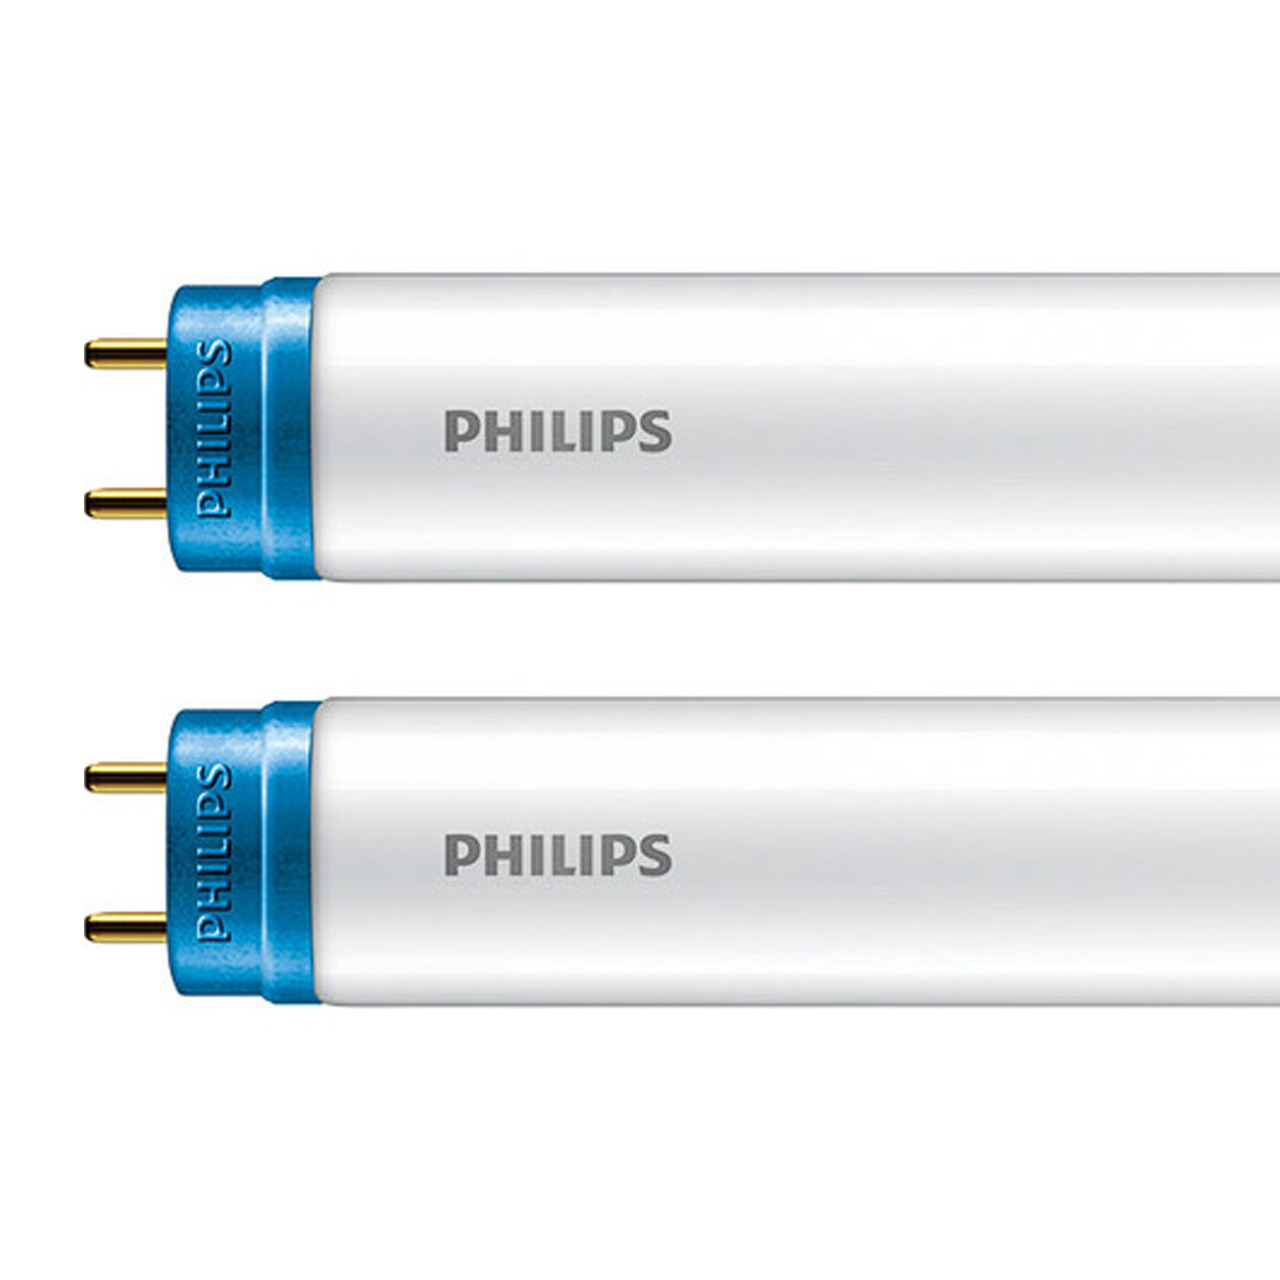 Philips 2er-Set 14-5-W-T8-LED-Rhrenlampe CorePro LEDtube- 1800 lm- neutralweiss- KVG-VVG- 120 cm